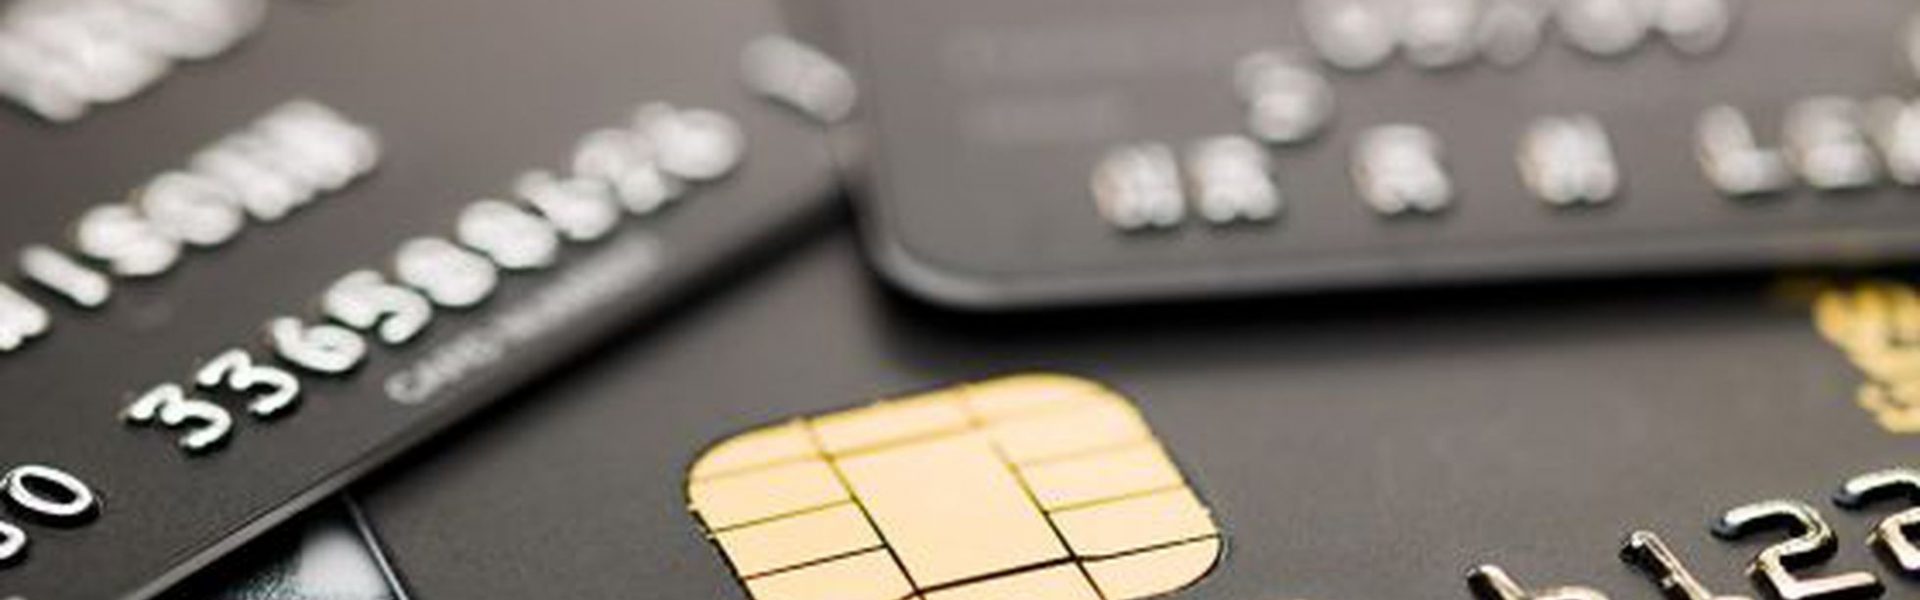 INAI alerta sobre robo de datos de tarjetas de crédito y débito